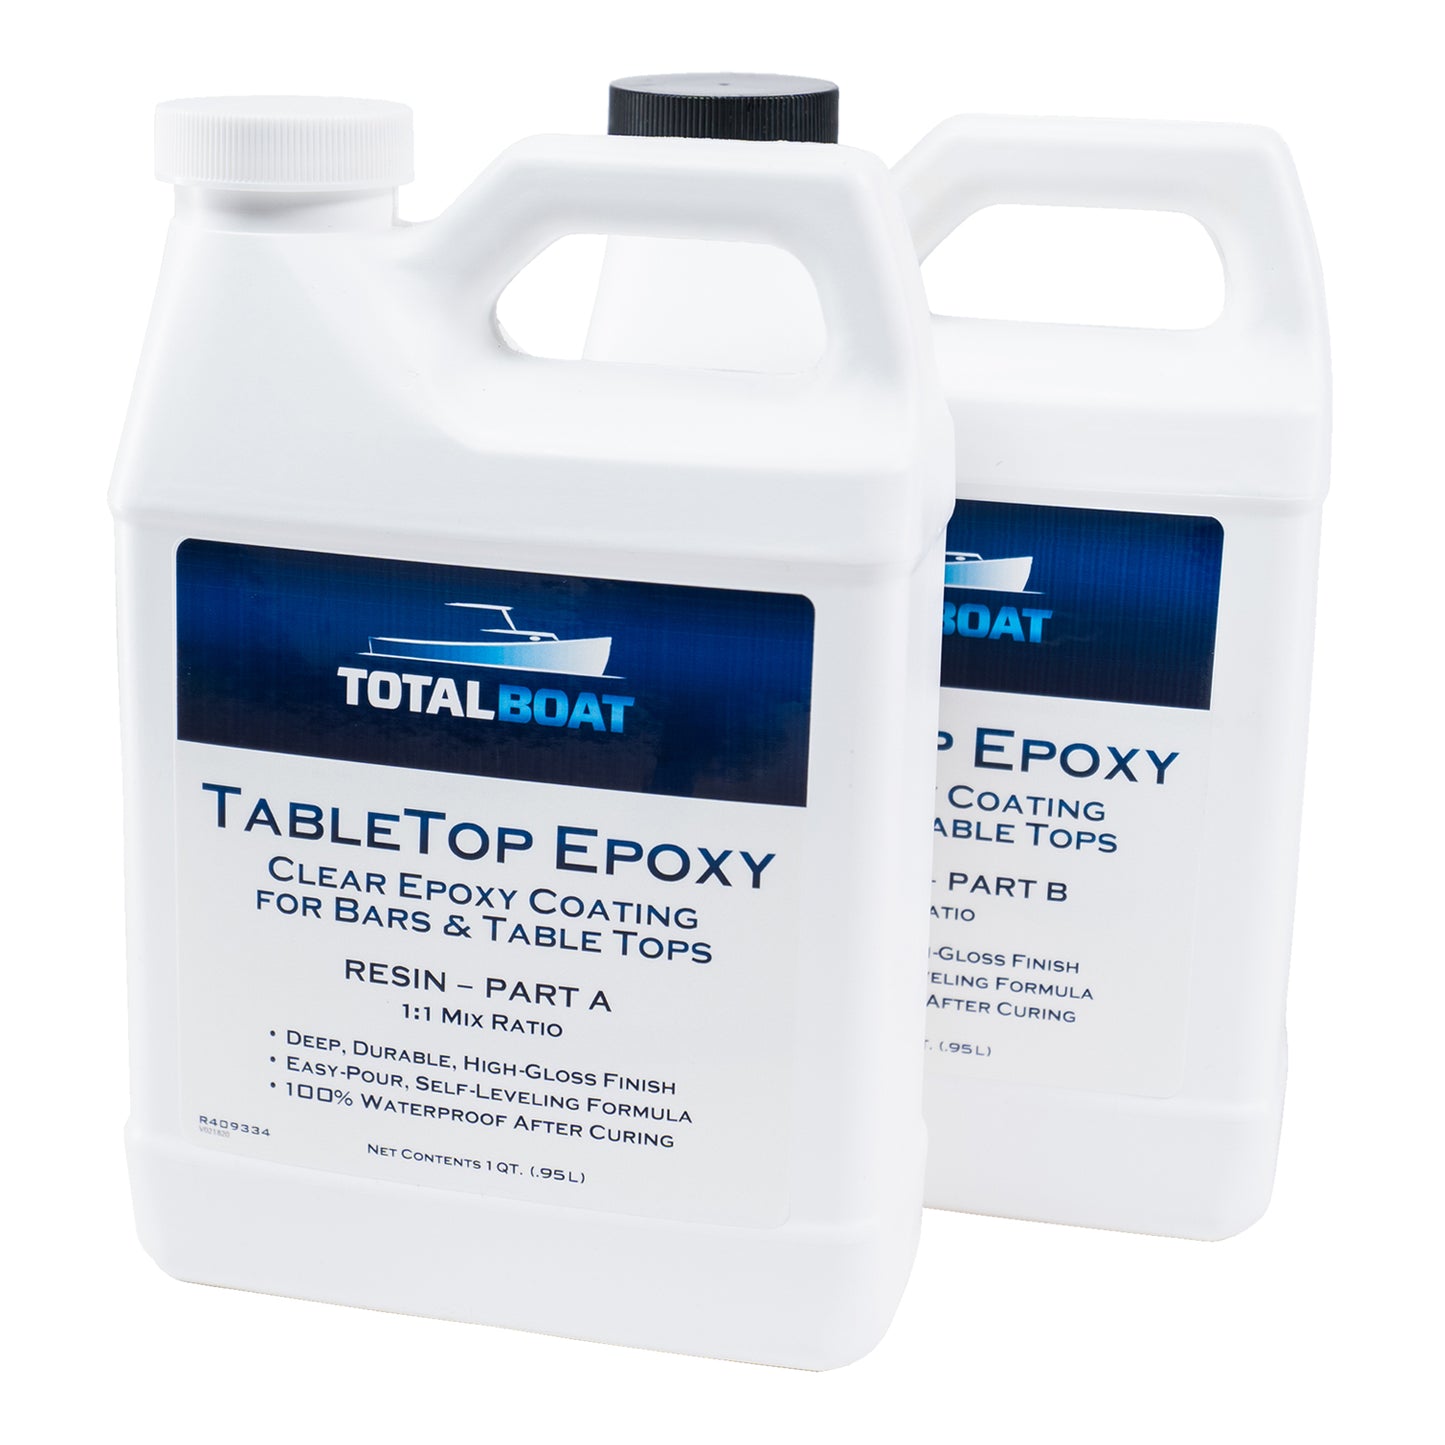 TotalBoat Table Top Epoxy 2 Quart Kit